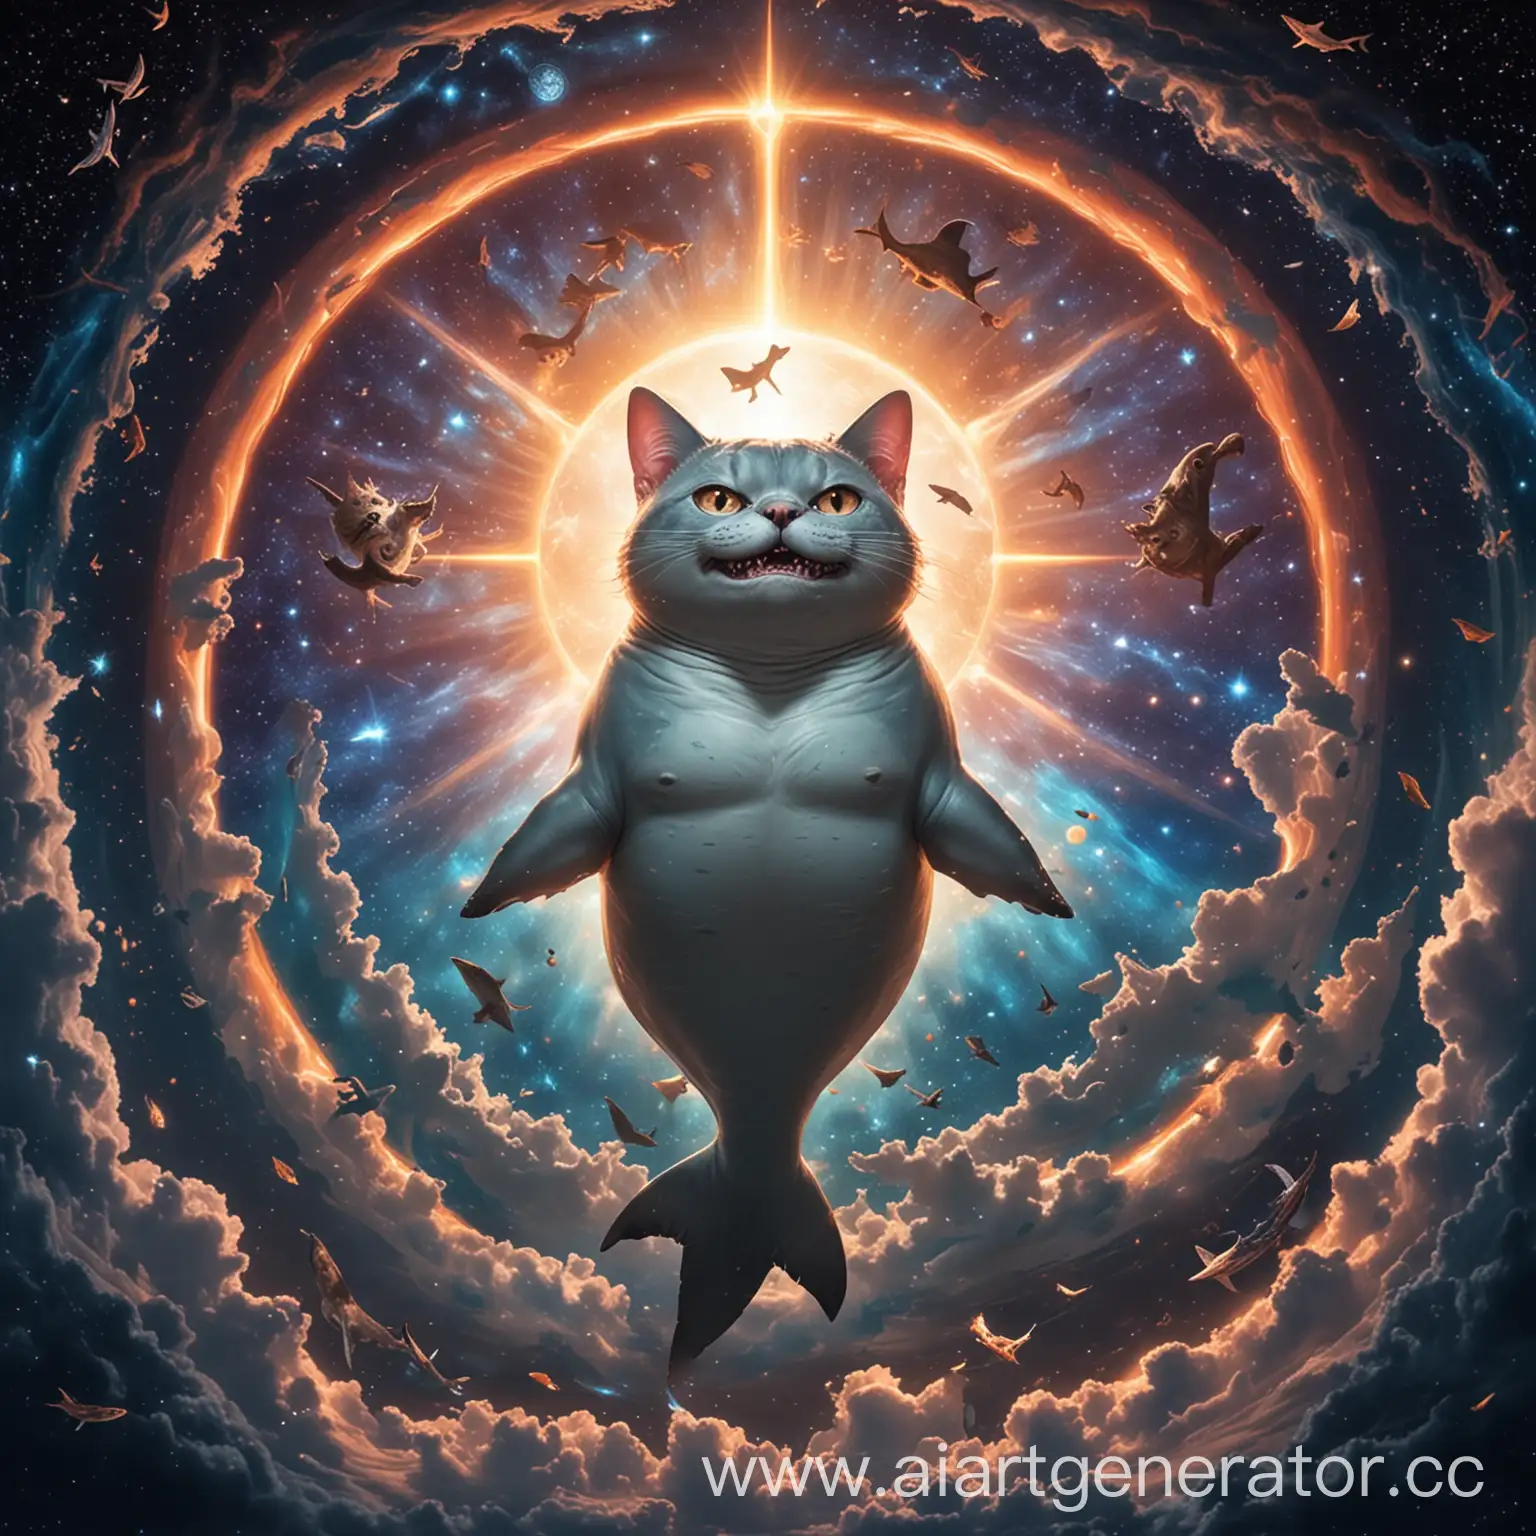 божество представляющее из себя акулу с головой кота витает в вечном космосе .Сделай свечение вокруг божества для грационзнсти